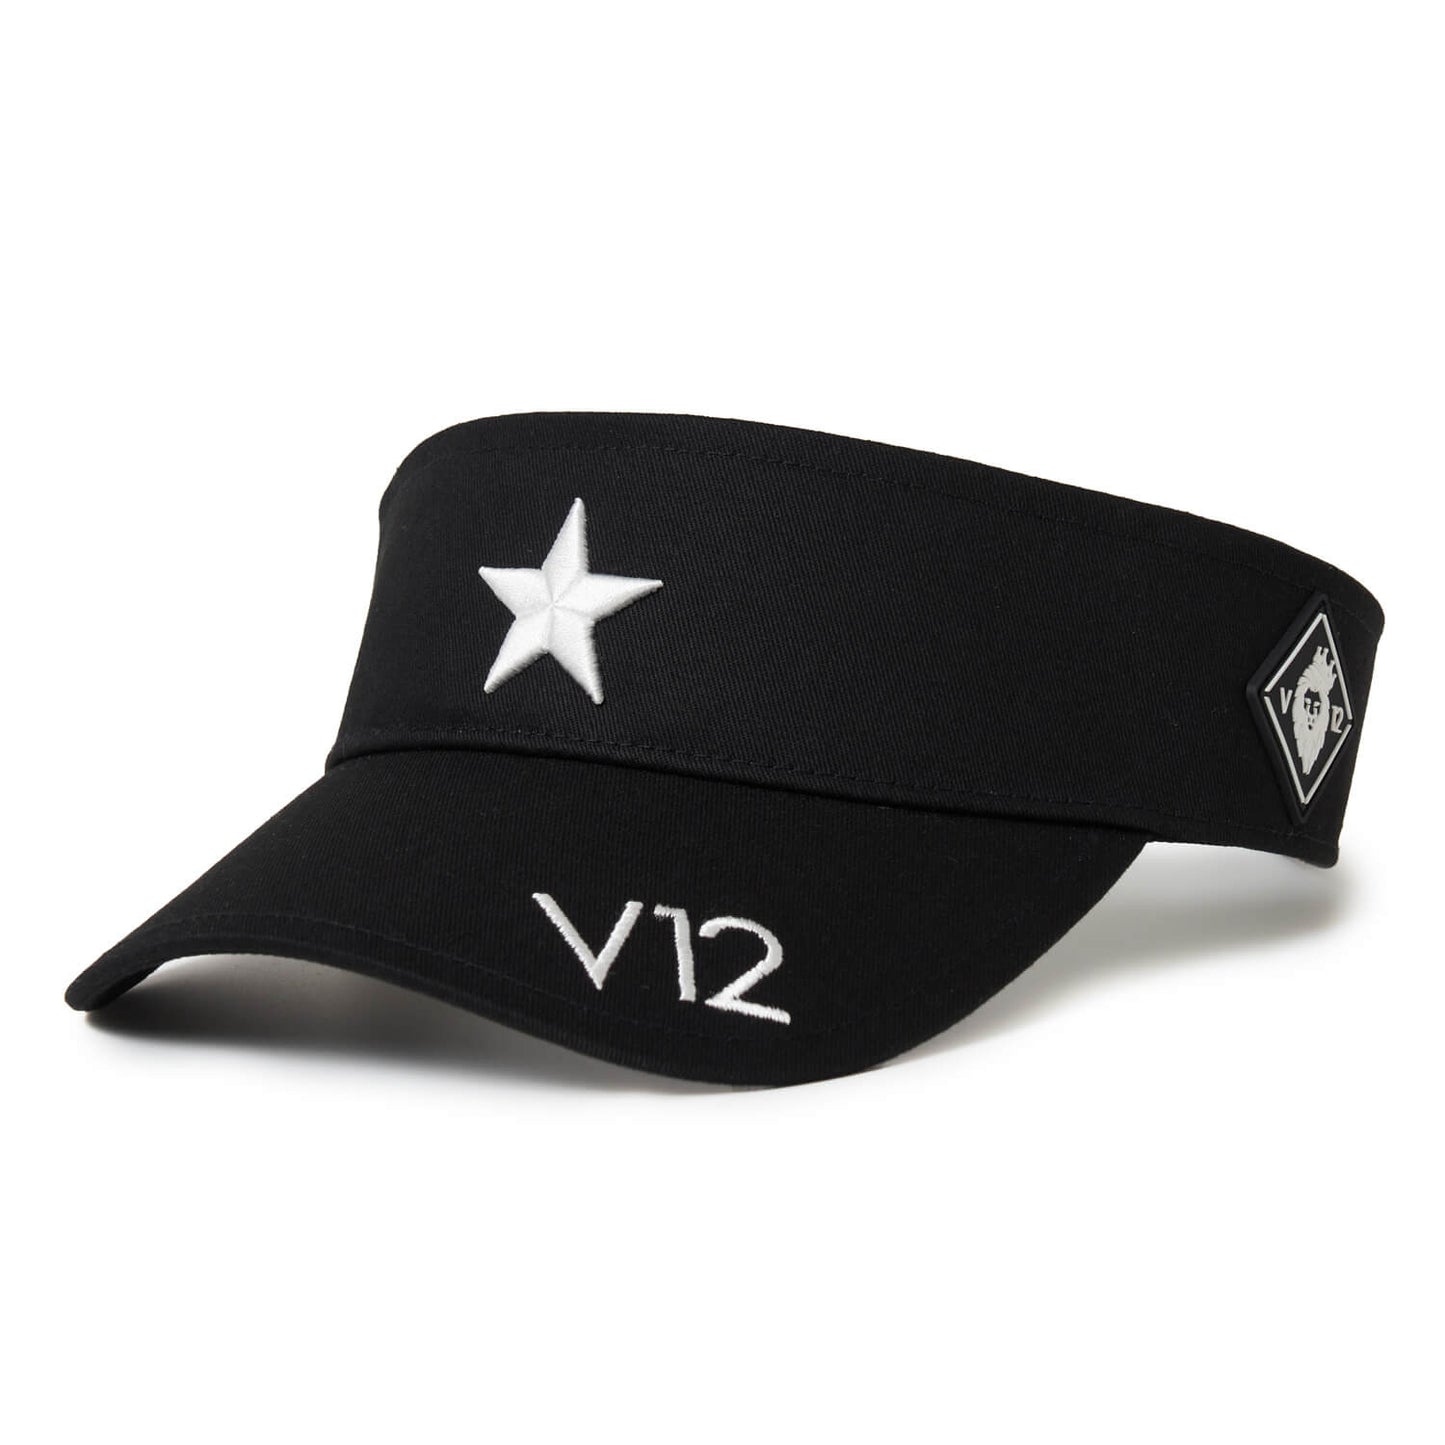 V12 ONE STAR VISOR